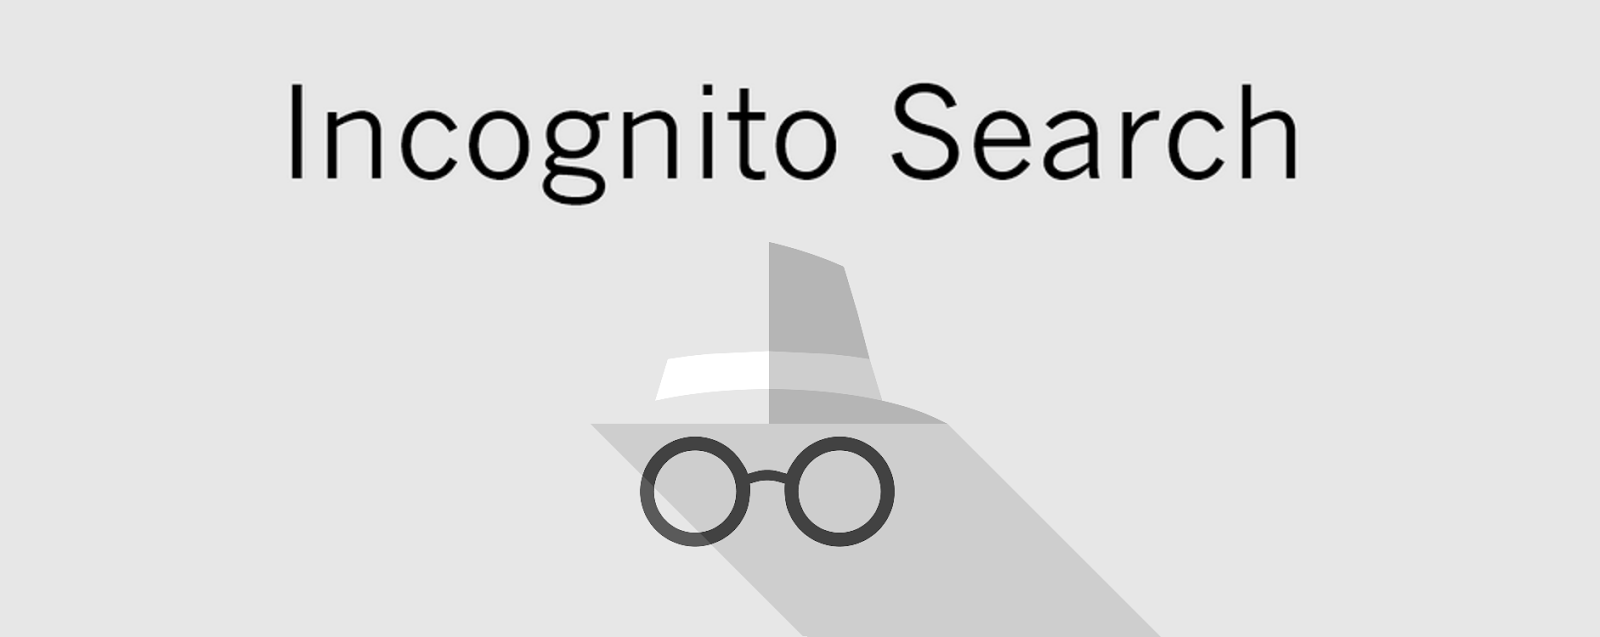 Search Incognito Google Chrome Extension